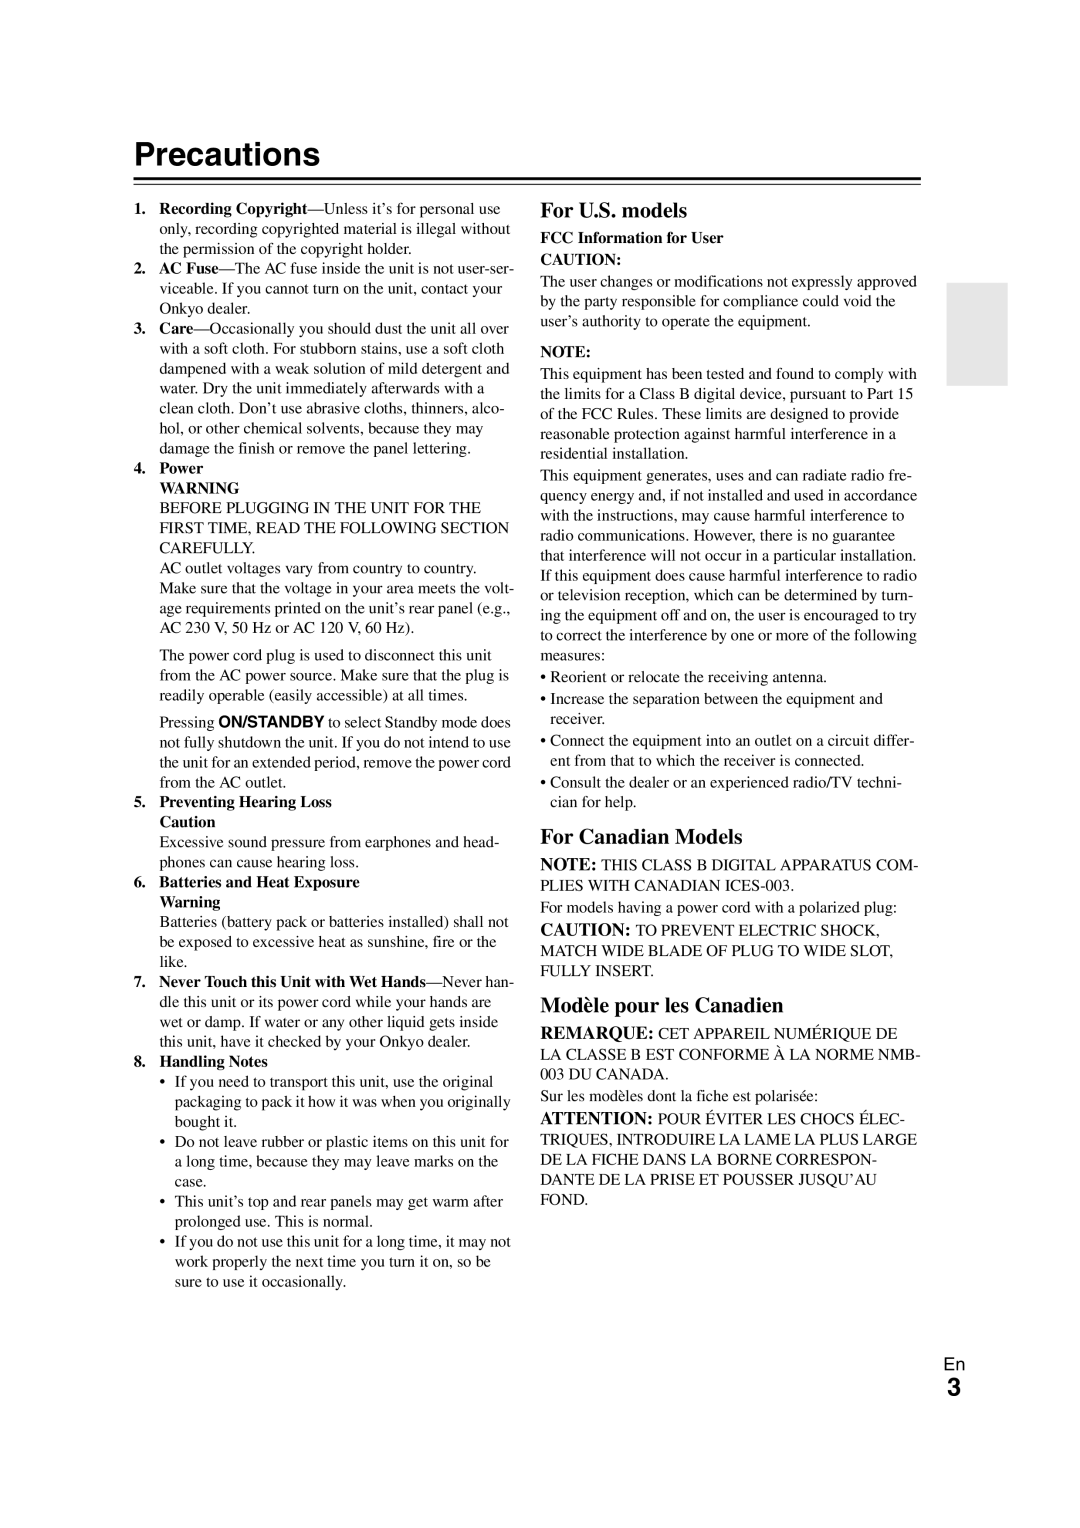 Onkyo TX-NR1008 instruction manual Precautions, For U.S. models, For Canadian Models, Modèle pour les Canadien 